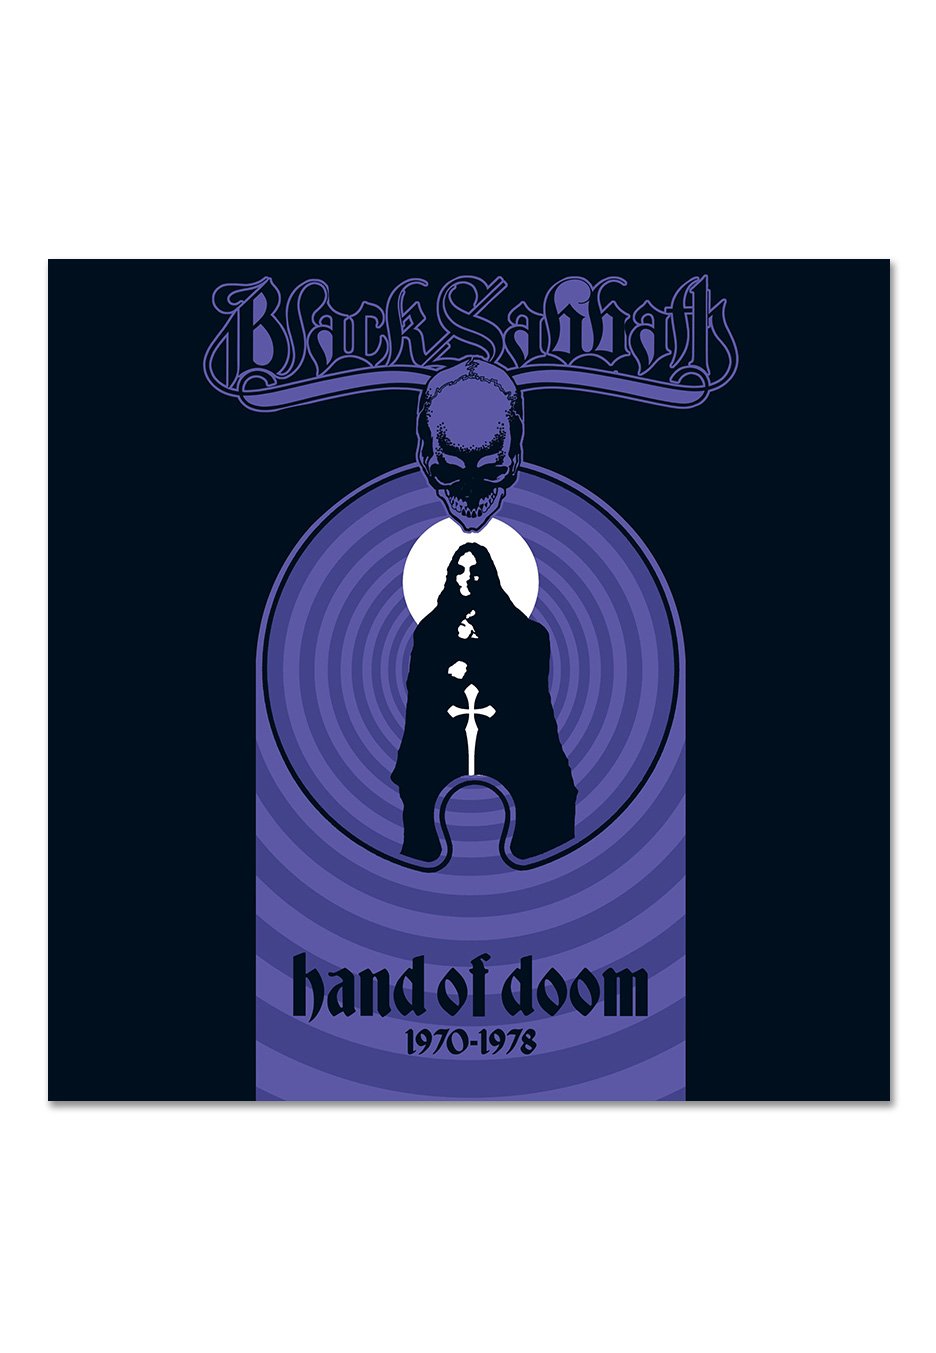 Black Sabbath - Hand Of Doom 1970-1978 (Super Deluxe) - 8 Picture Viny